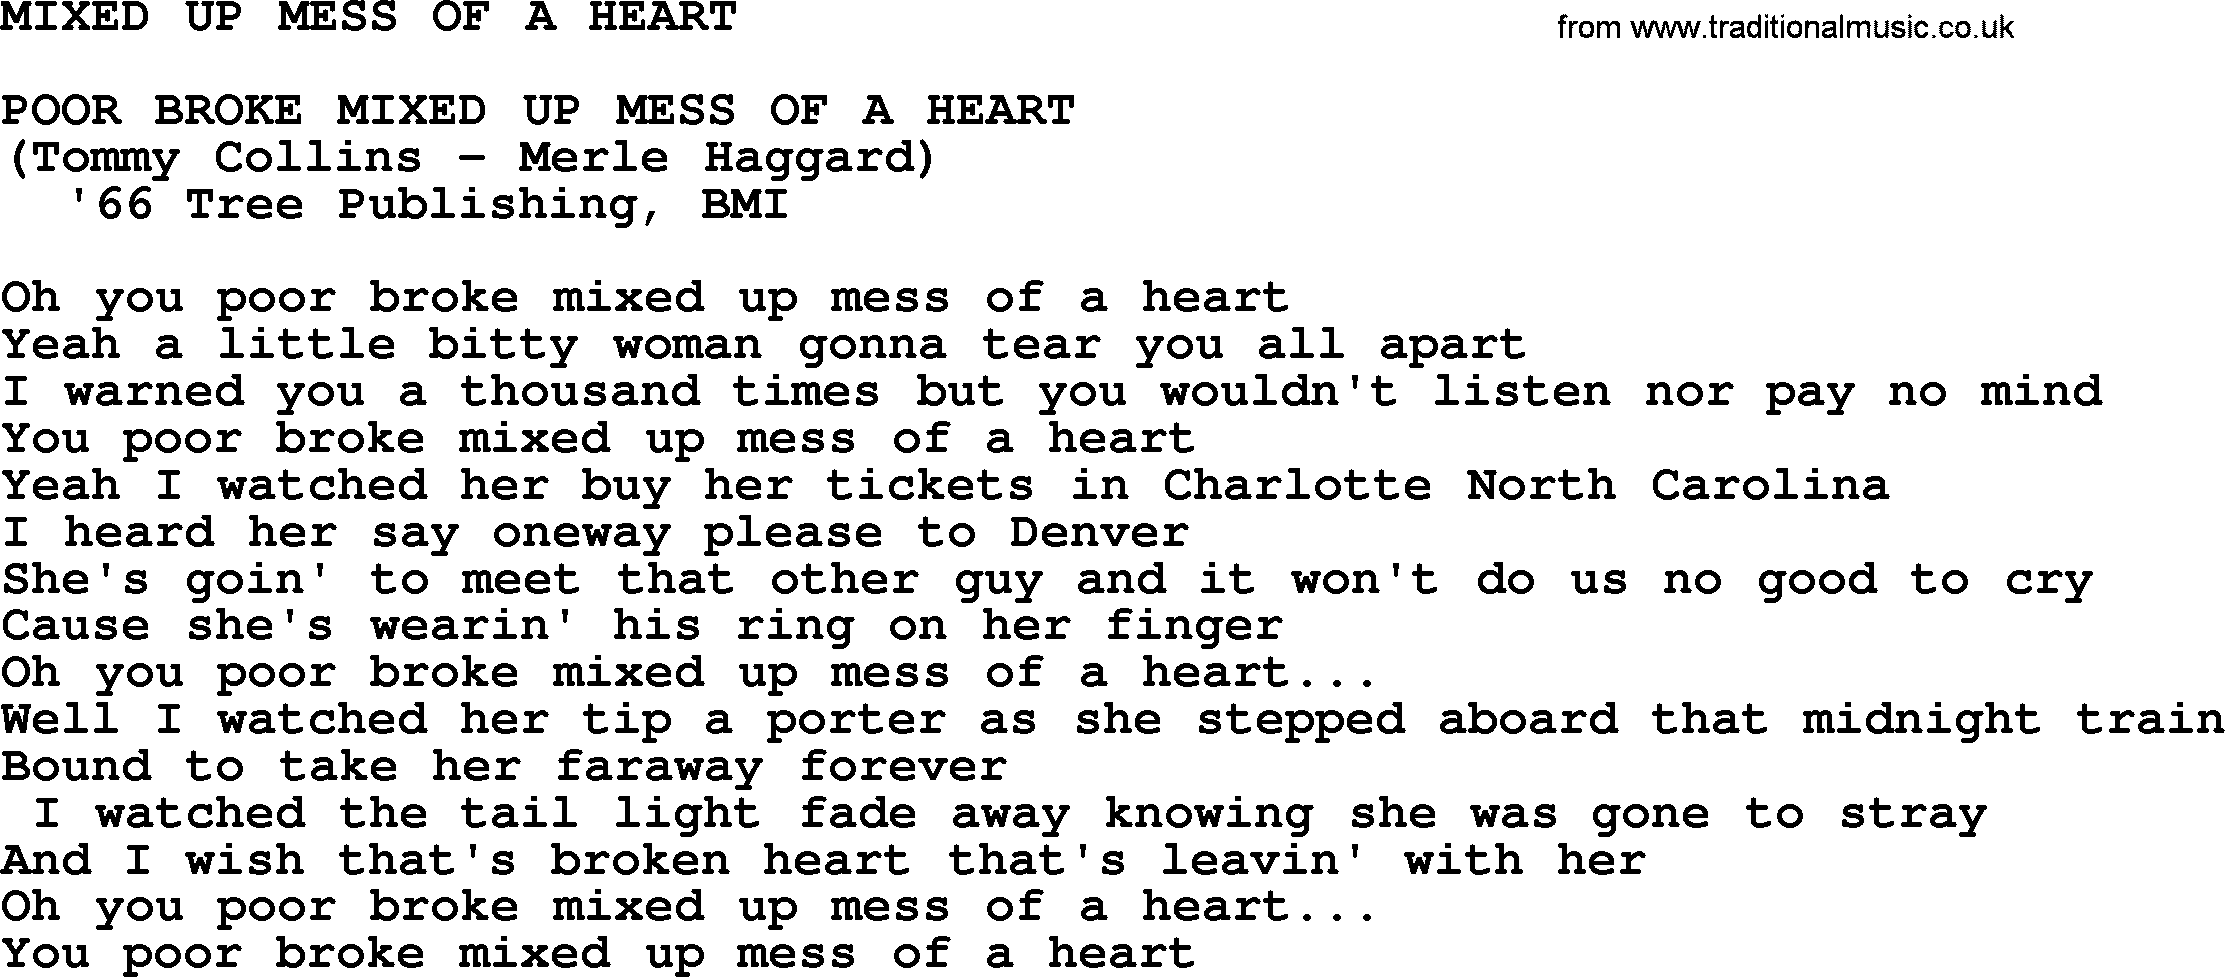 Merle Haggard song: Mixed Up Mess Of A Heart, lyrics.